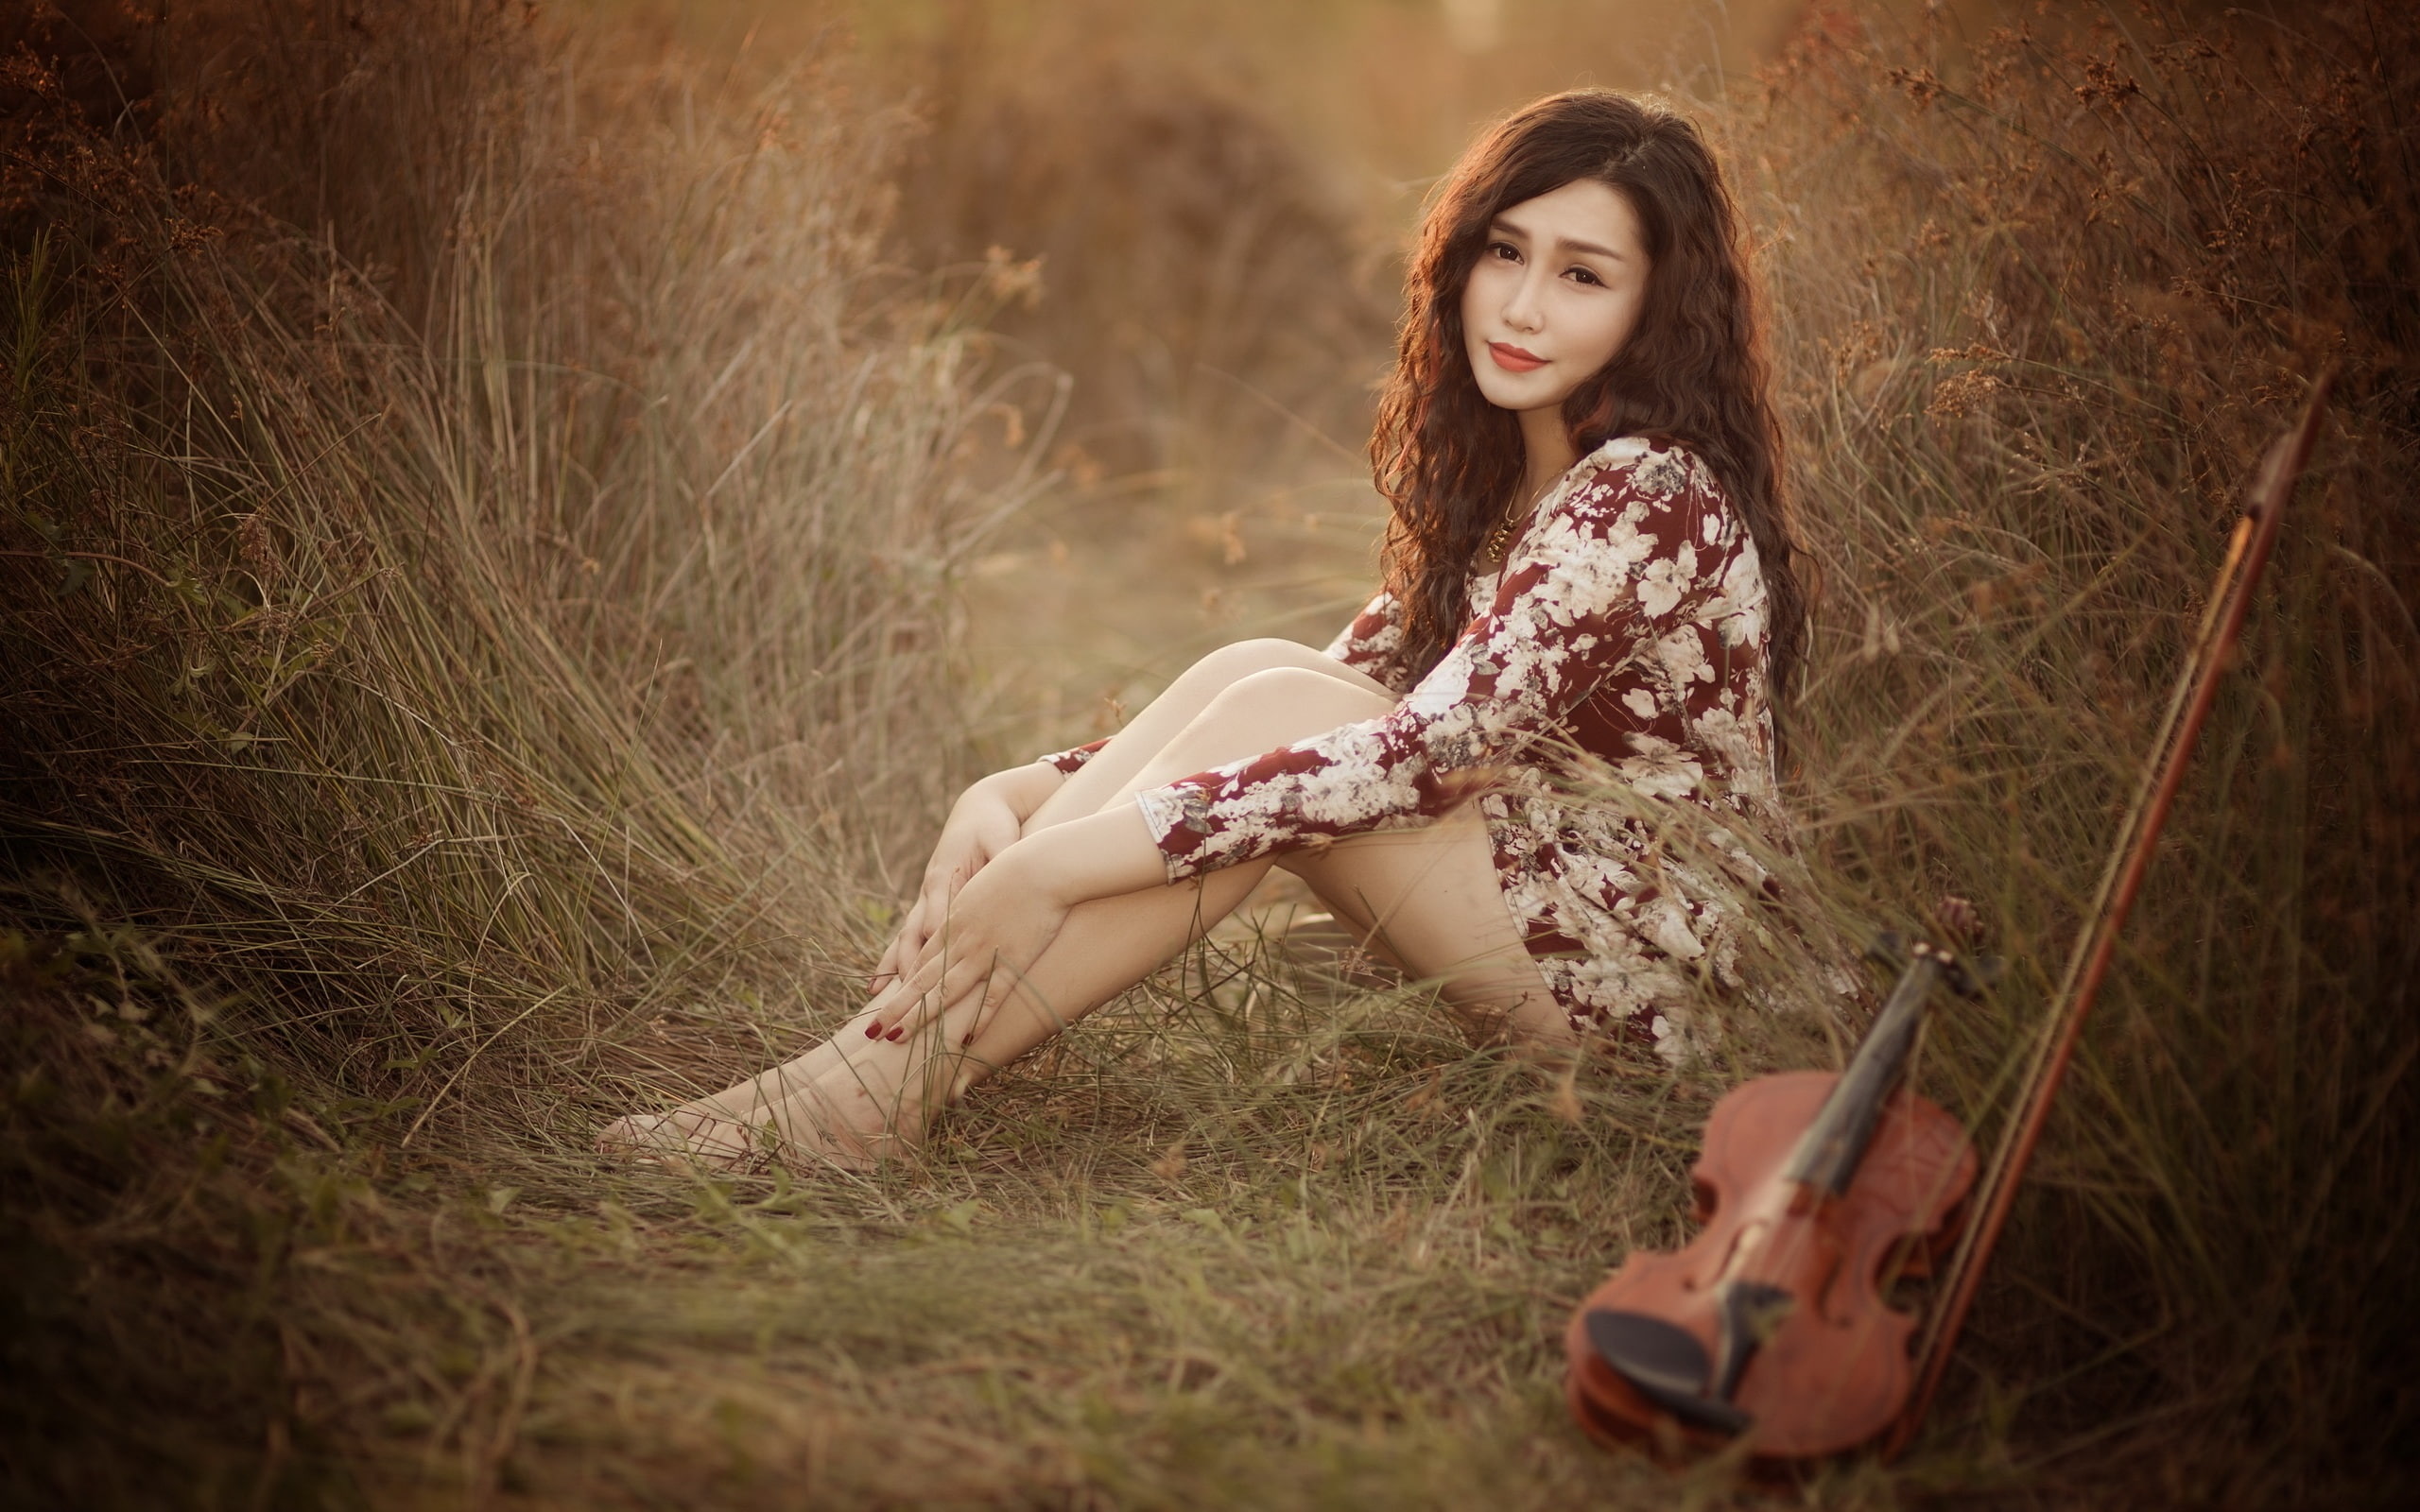 Asian girl, pose, look, violin, music